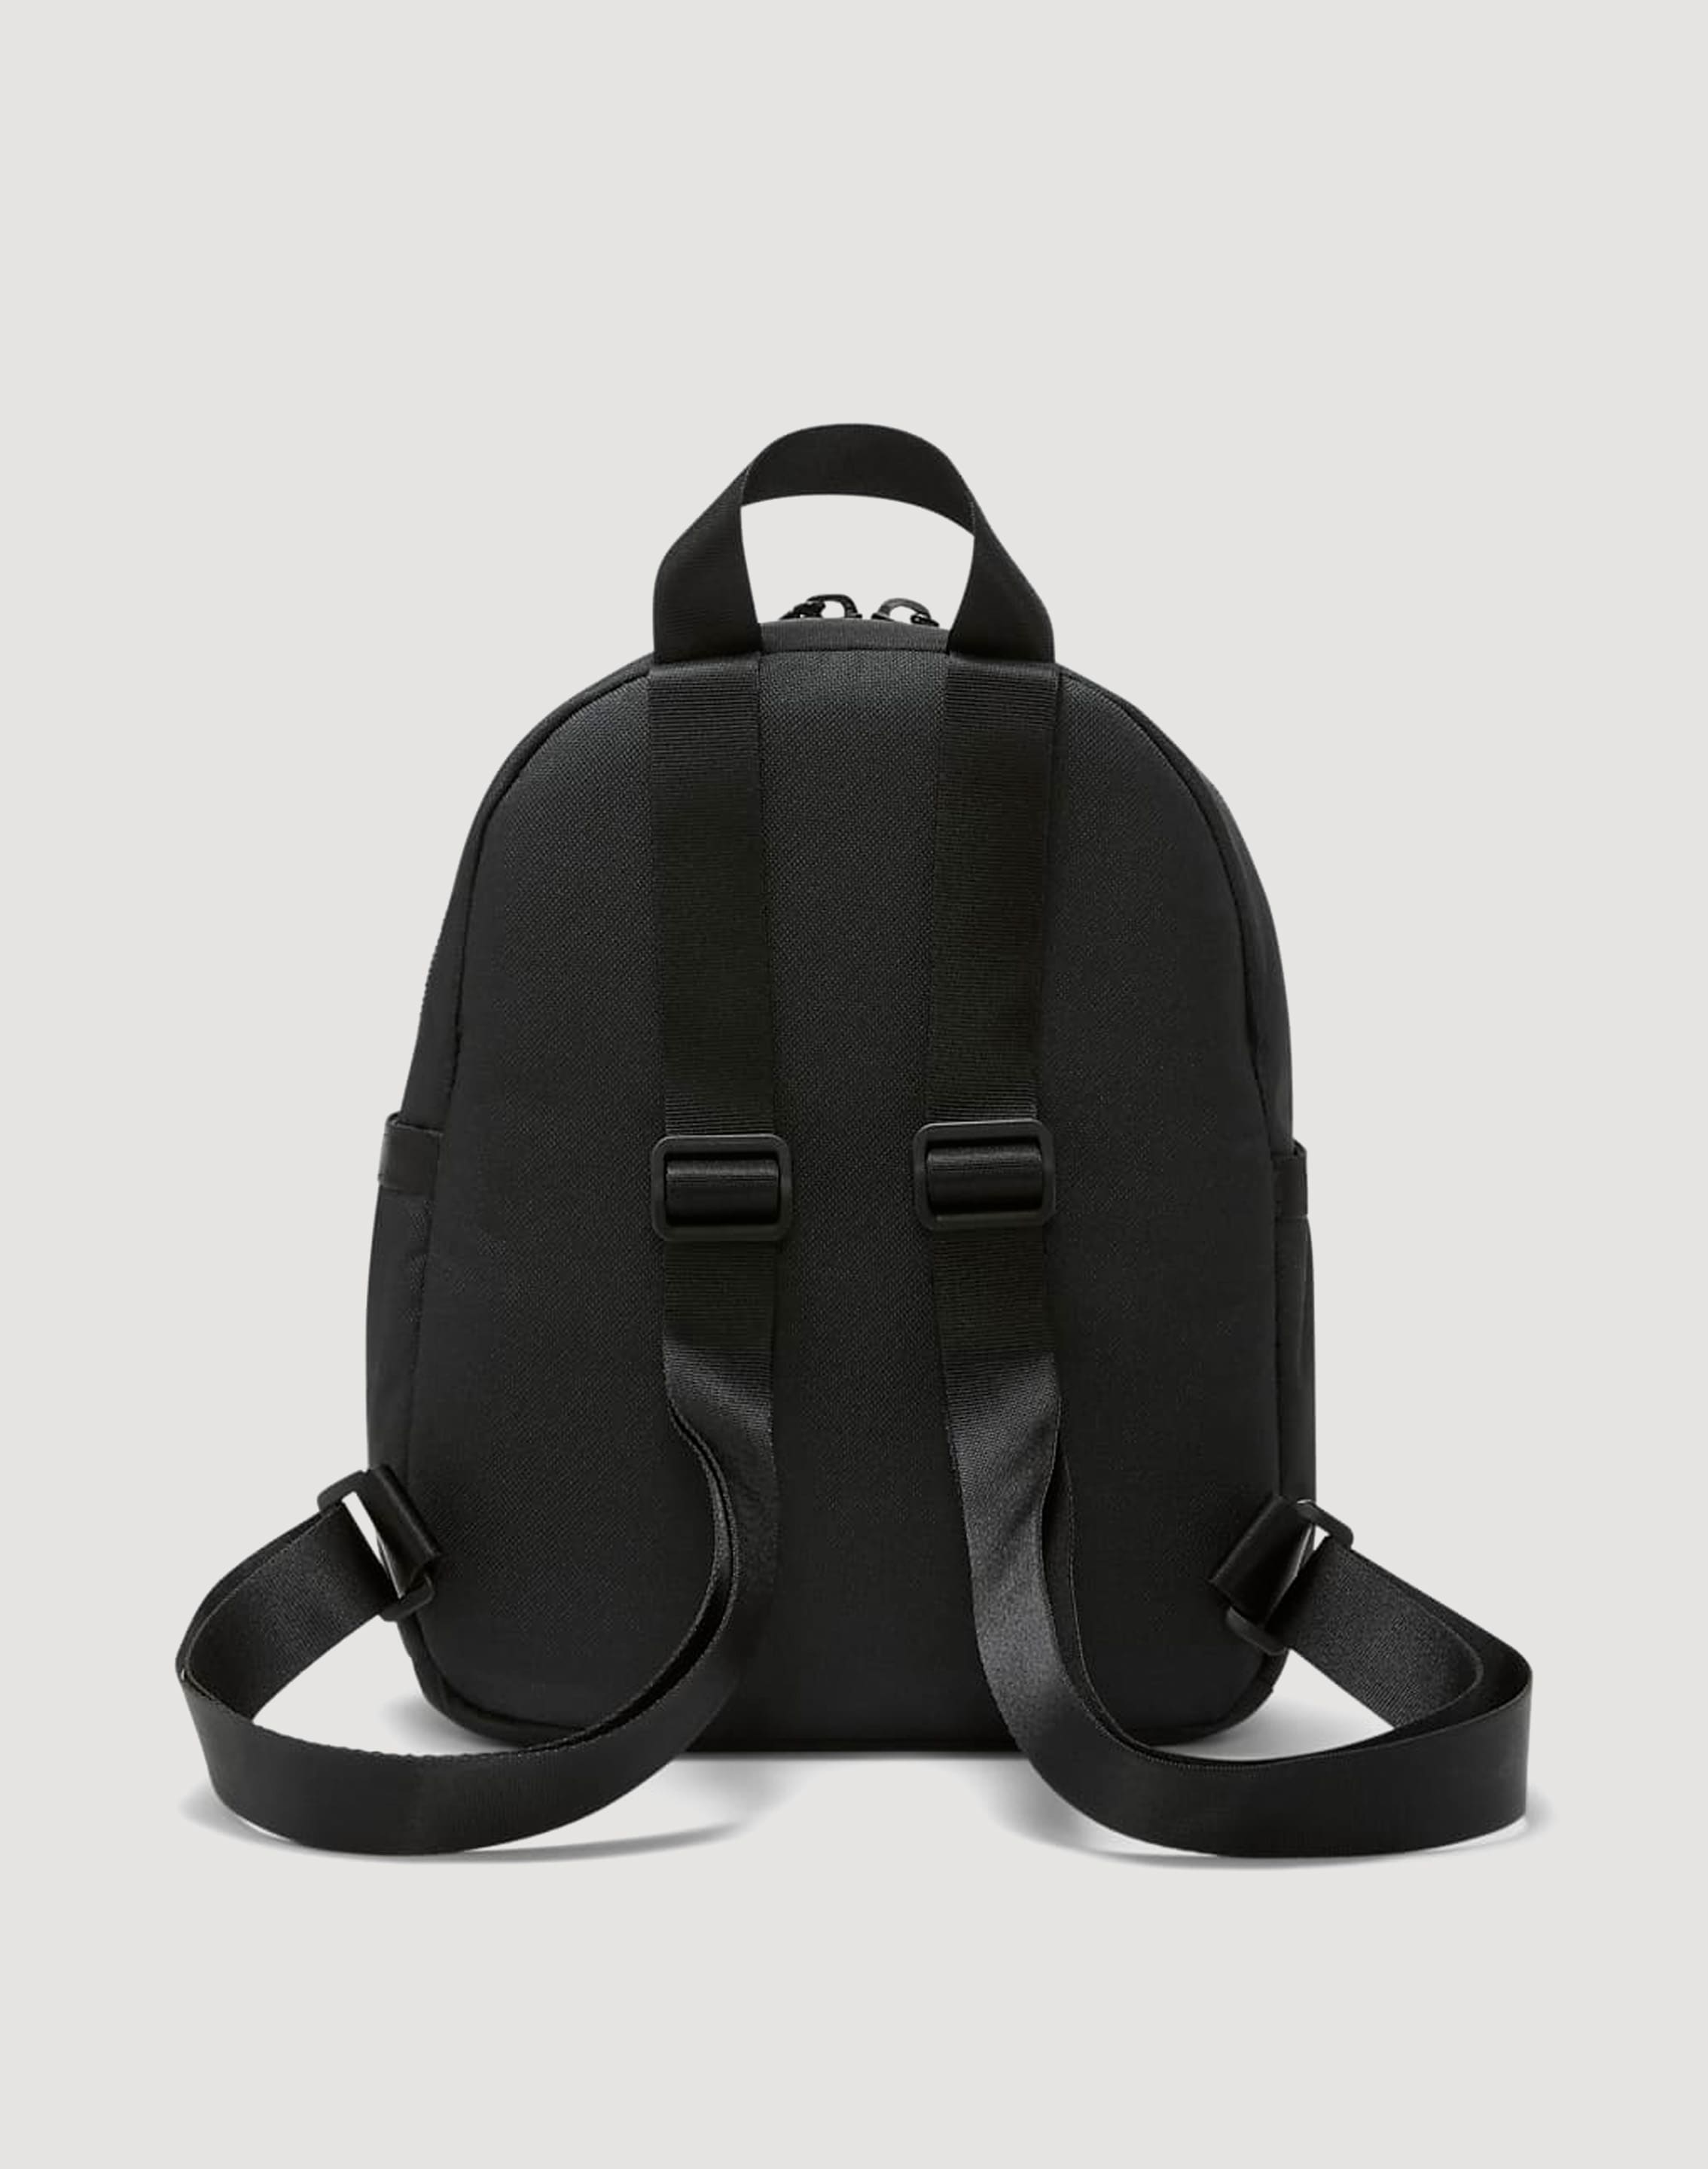 Nike Futura 365 Mini Backpack